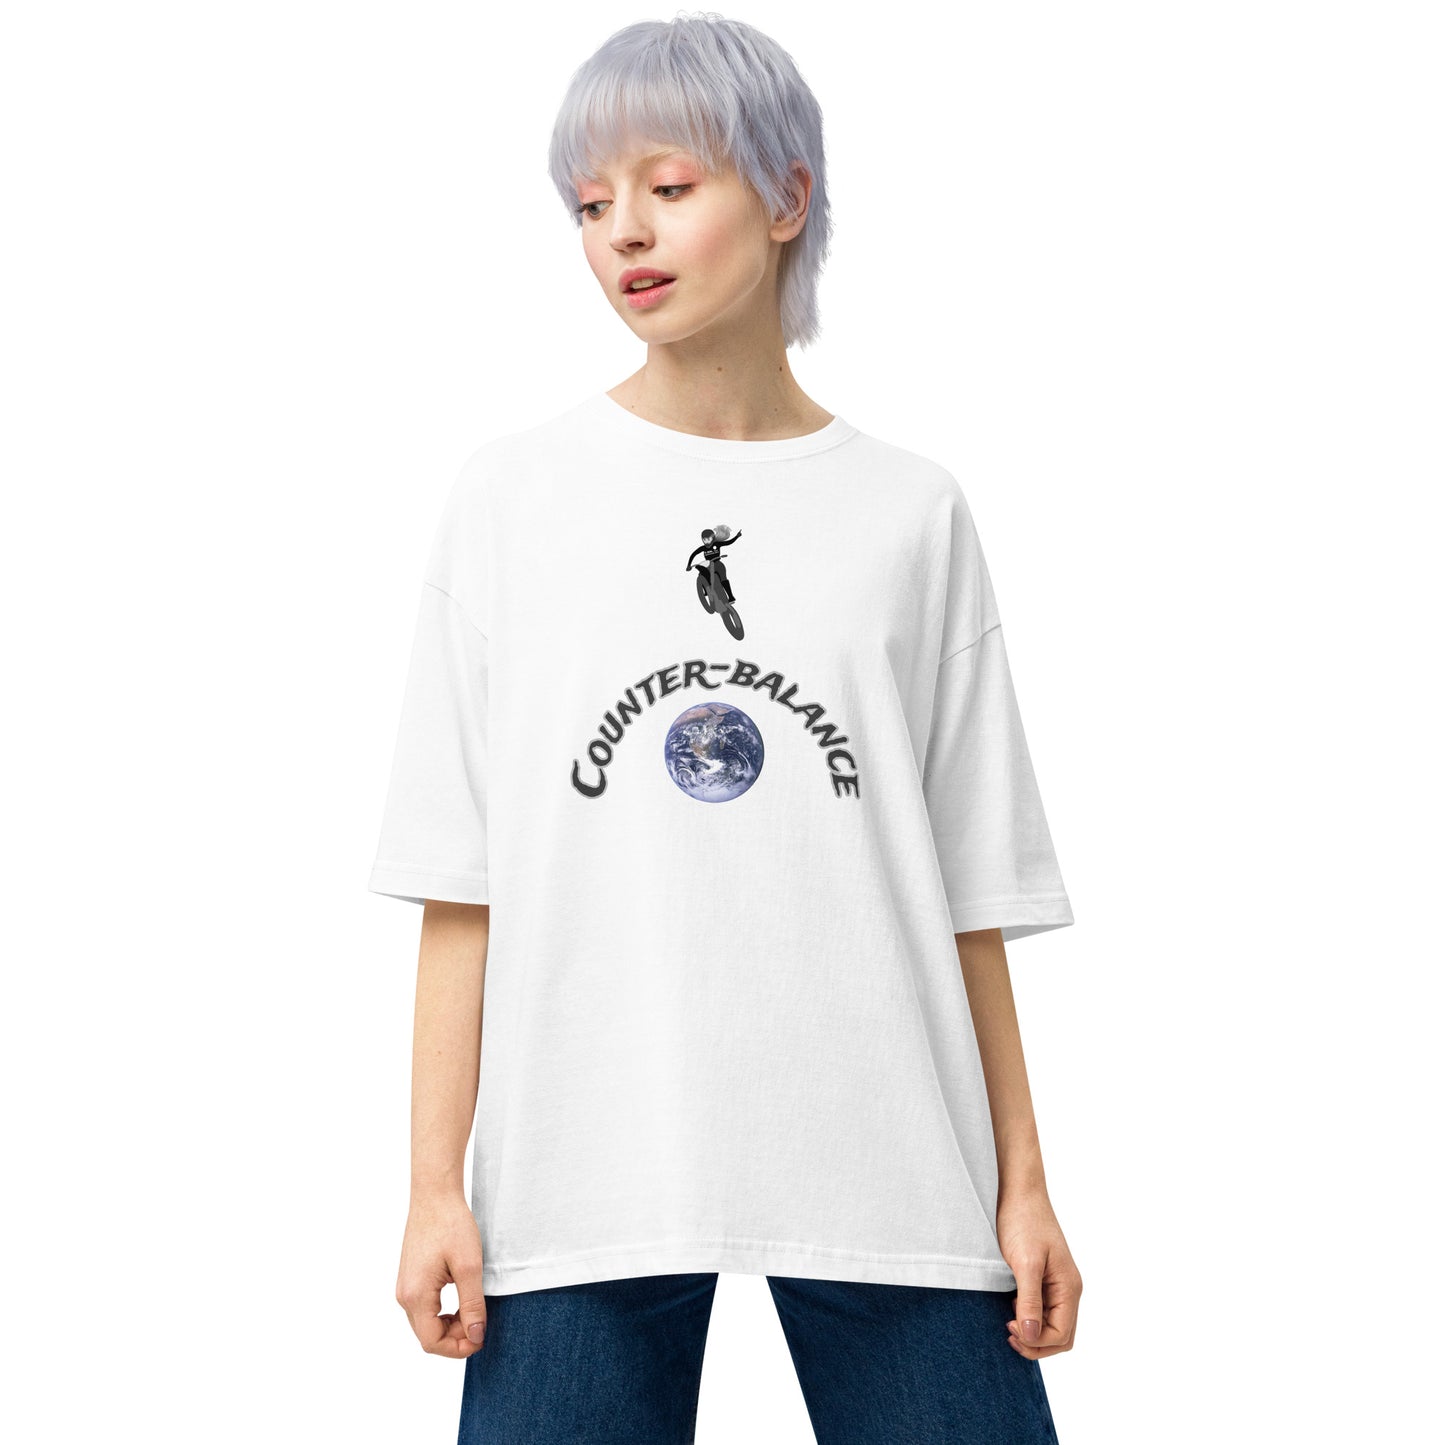 E226 - Tシャツ/ビッグシルエット(ユニバーサルジャンプ/女子 : ホワイト/ブラック)